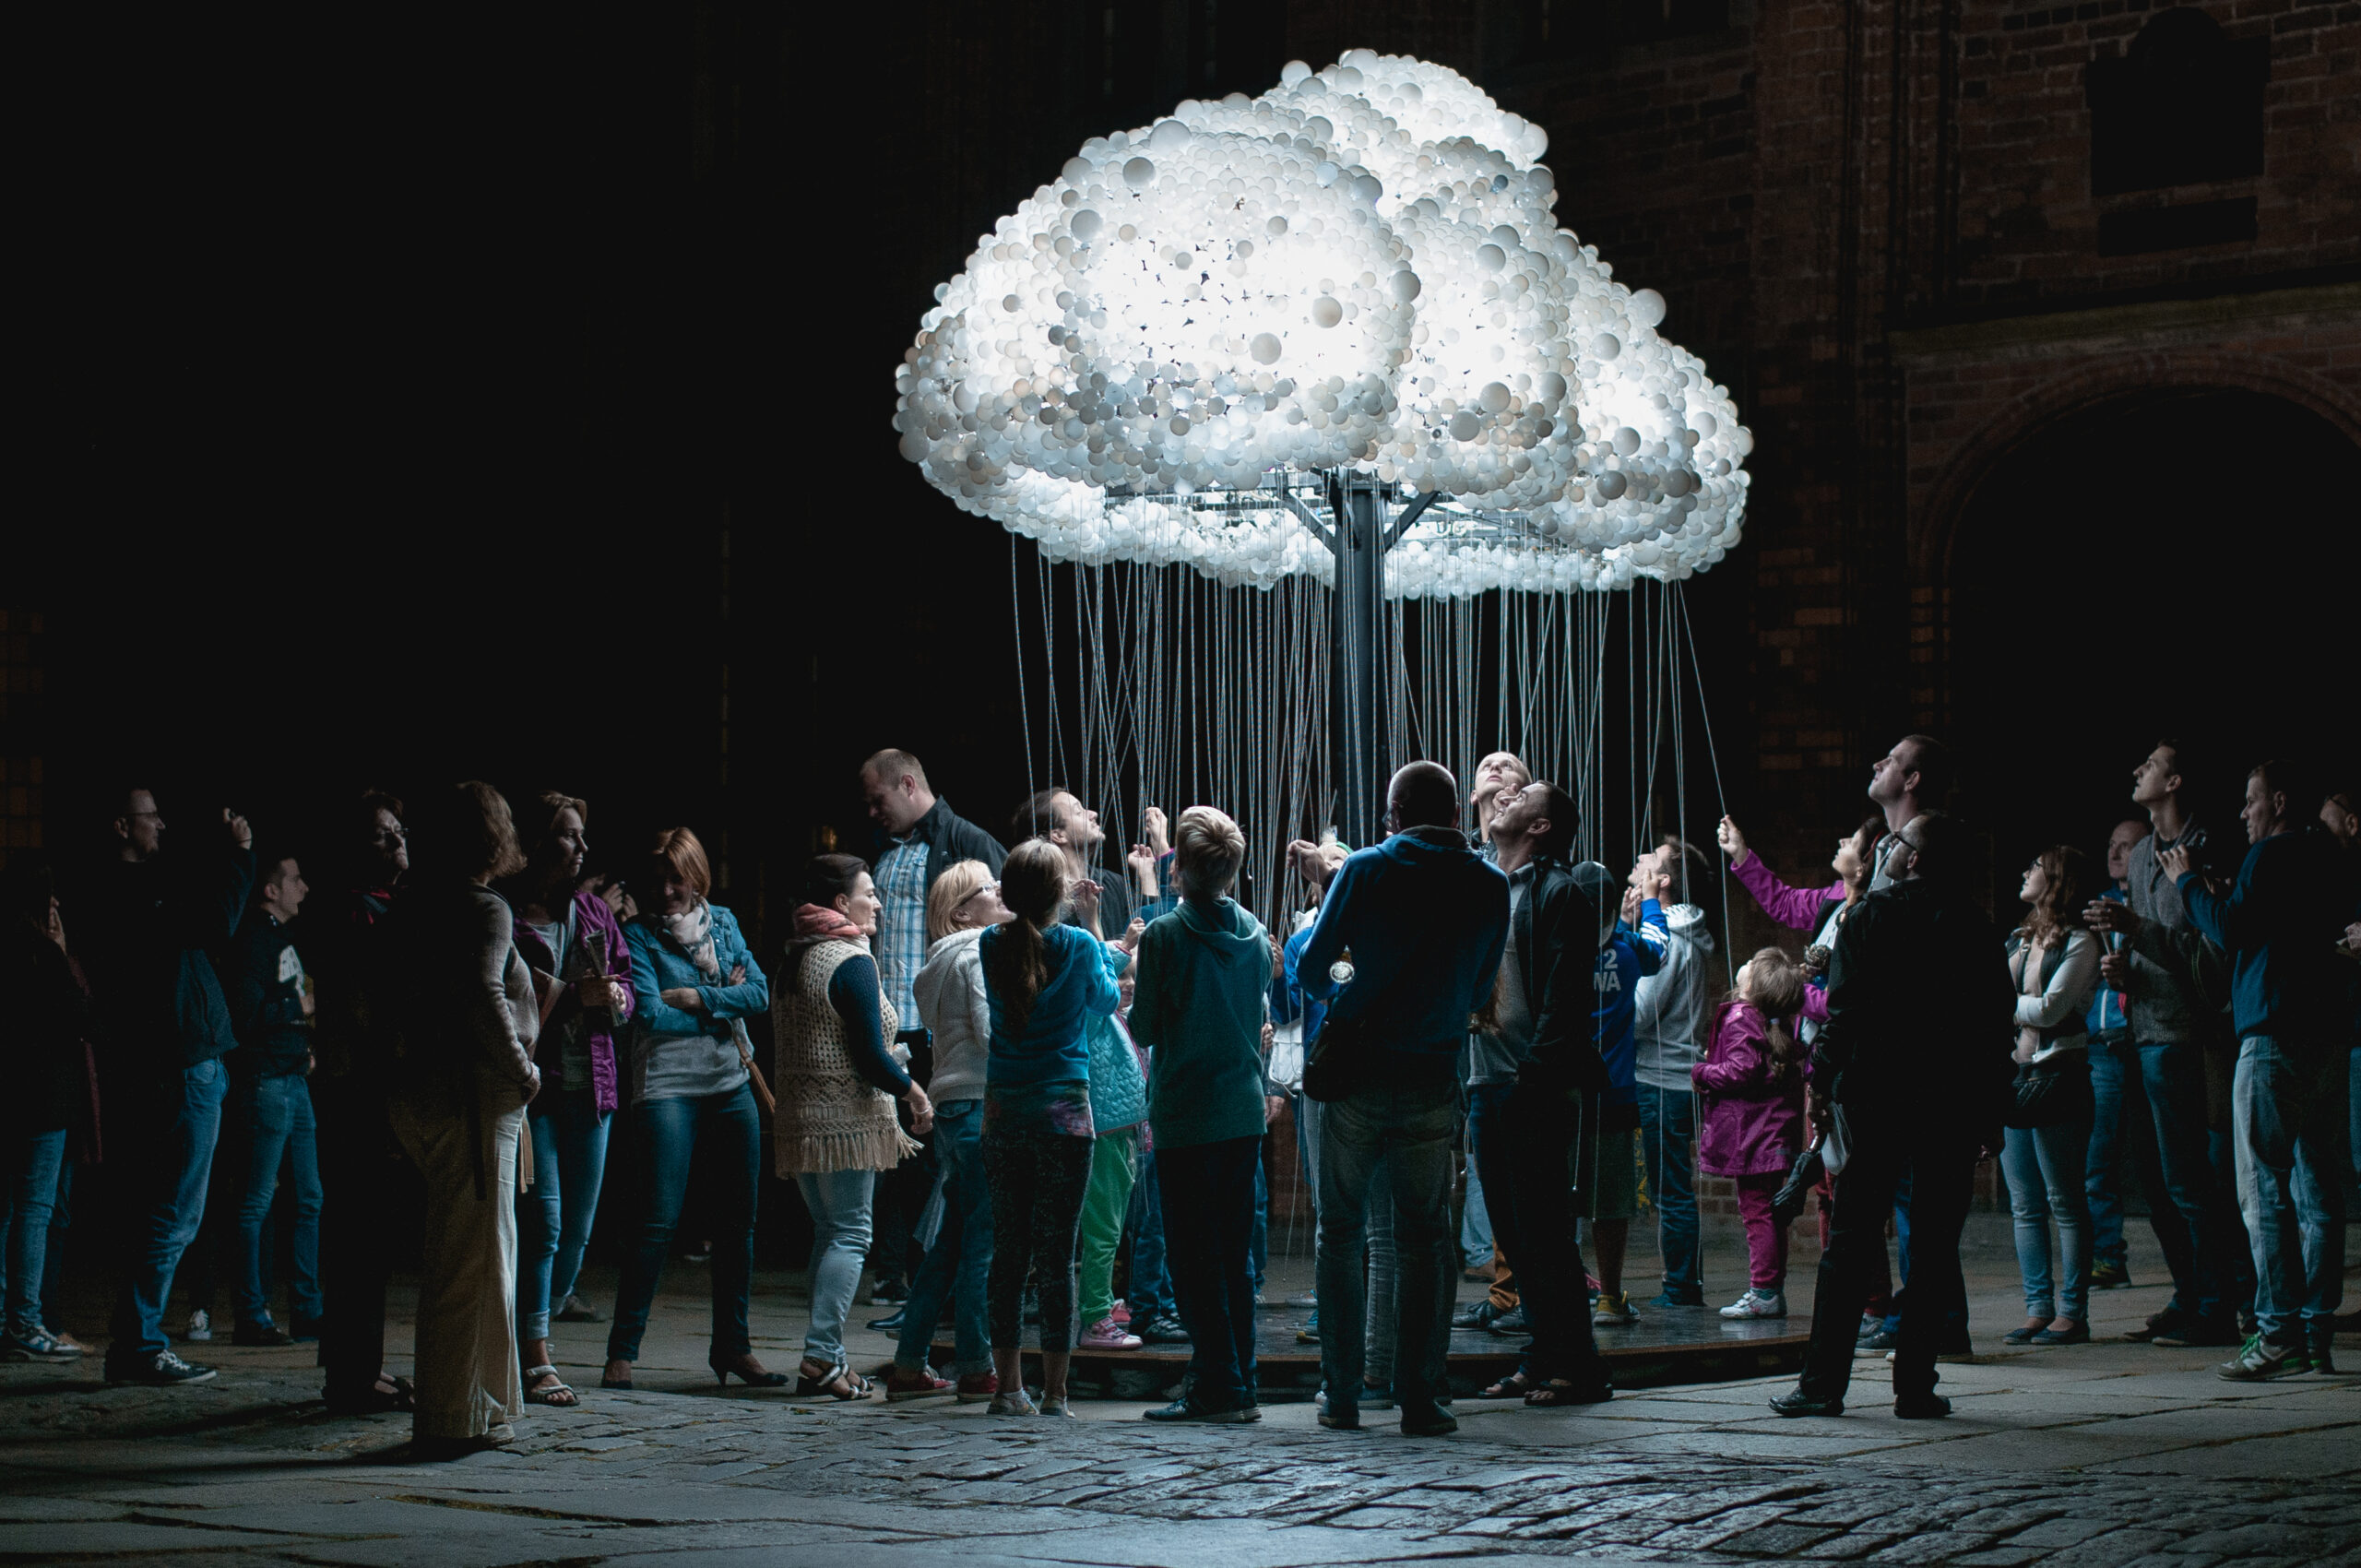 instalacja świetlna przedstawiająca chmurę z wiszącymi sznurkami, za które ciągną ludzie